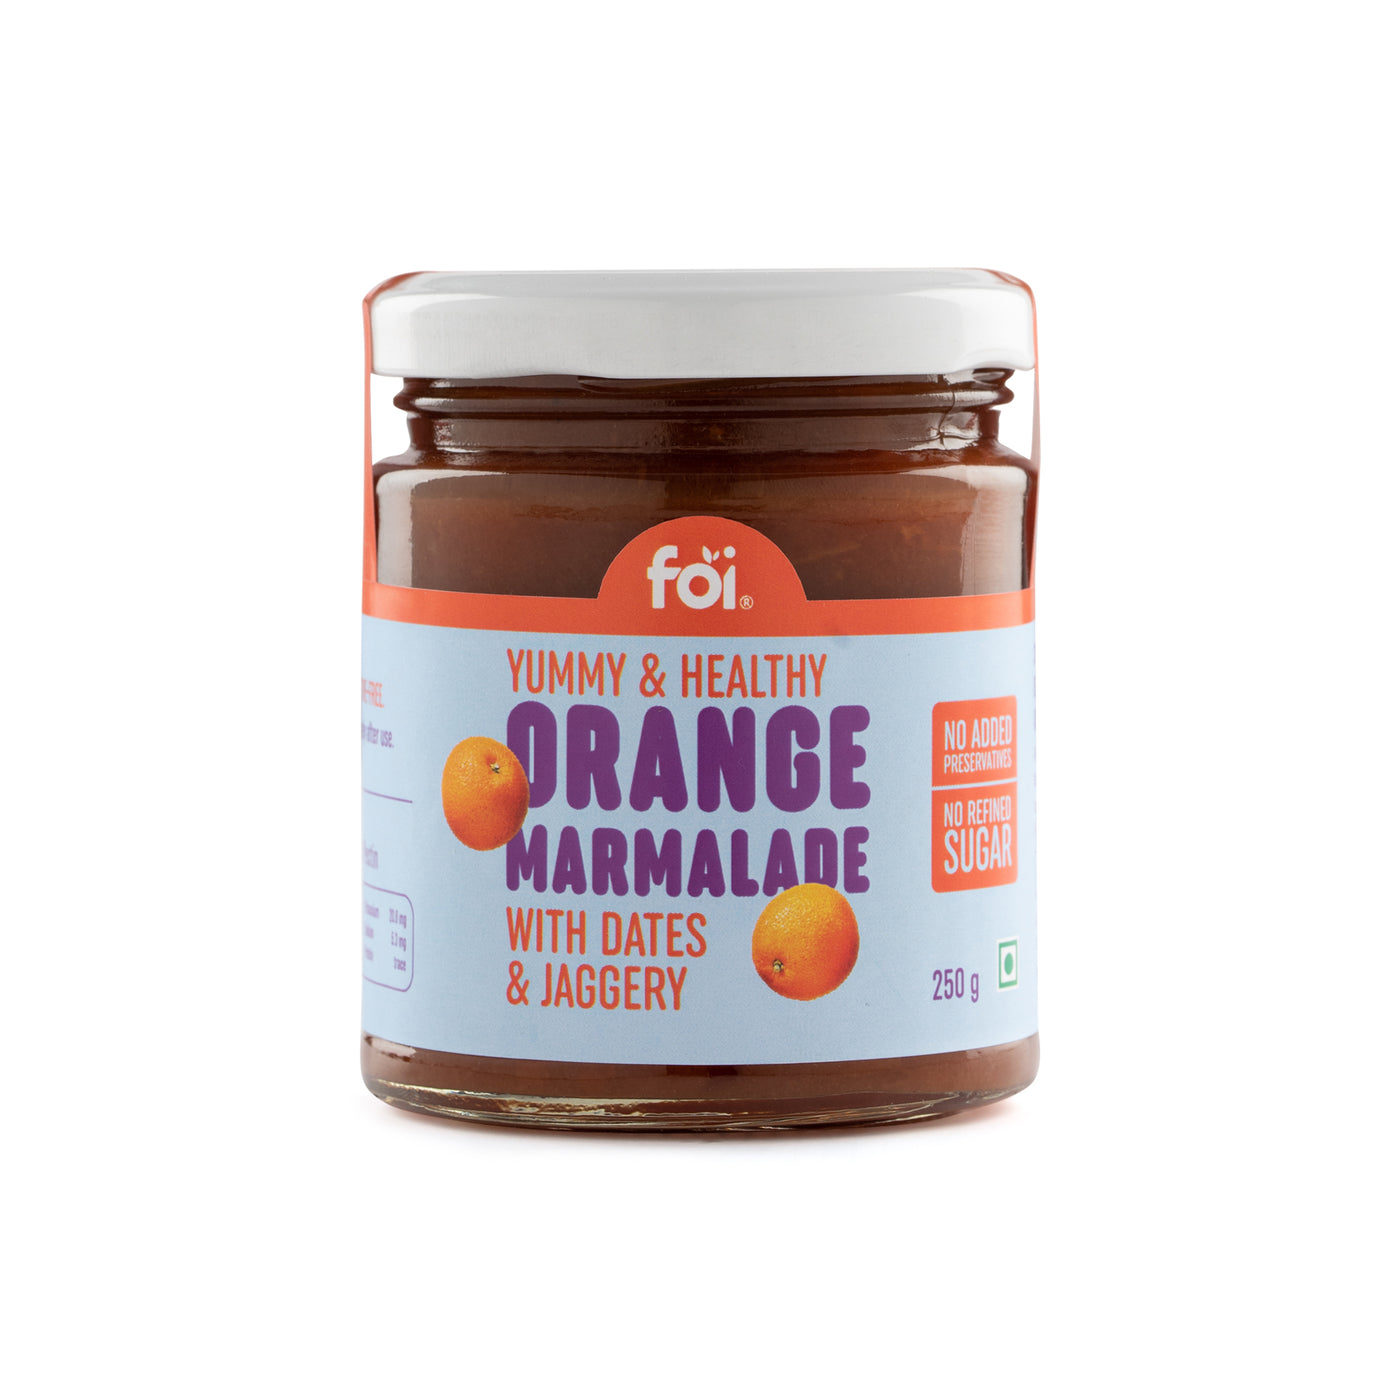 FOI Orange Marmalade